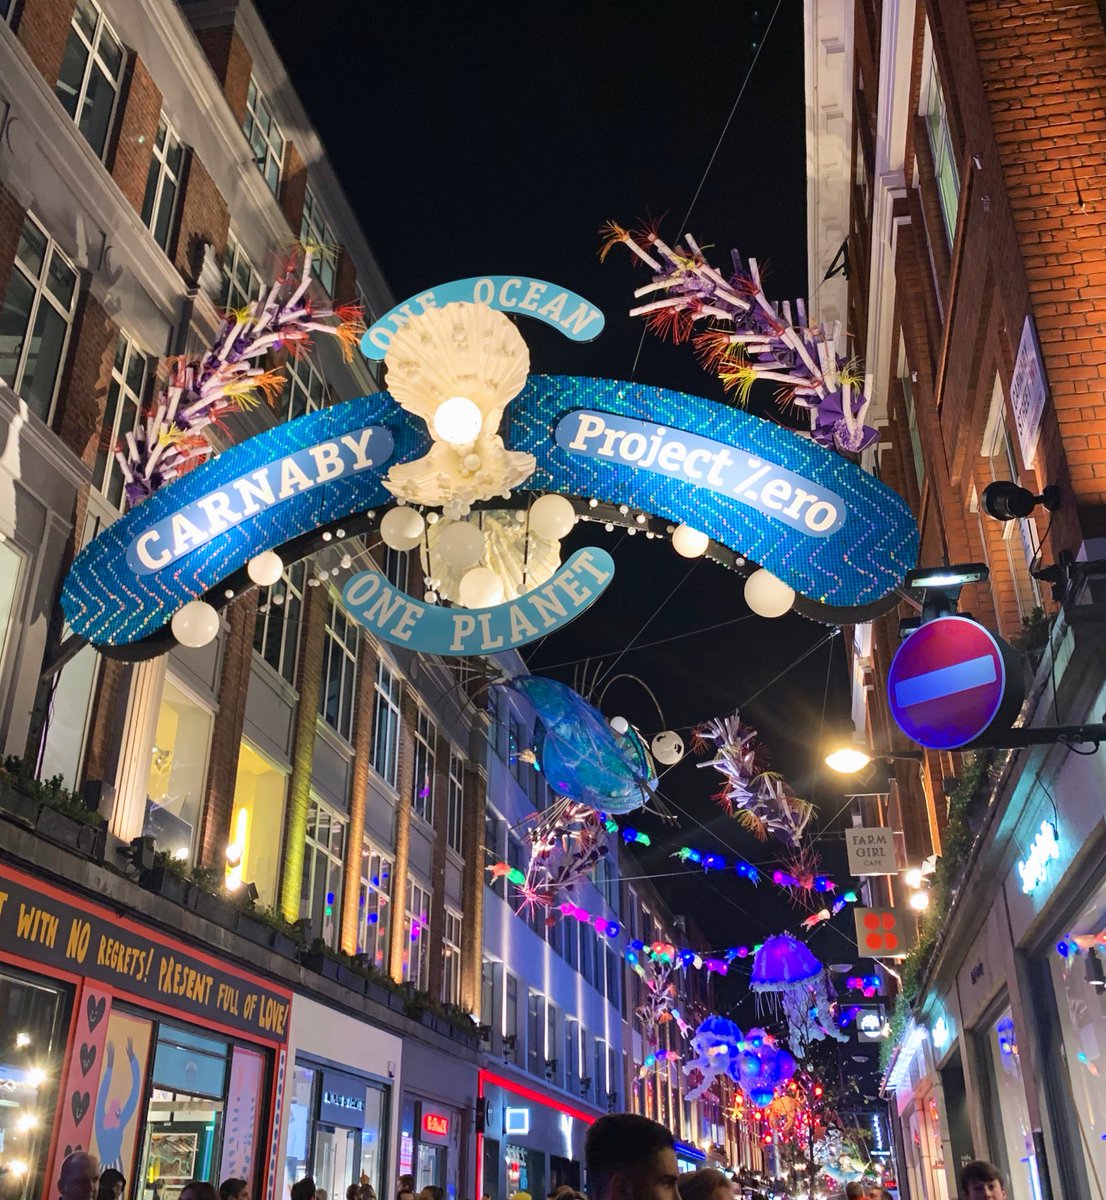 ট ইট র 𝖸𝗈 𝖮𝗄𝖺𝖽𝖺 𝖧𝗈𝗐𝖾𝗅𝗅𝗌 ロンドン繁華街 カーナビーストリートのクリスマスデコレーション 海のカーニバルっぽくてとても素敵 ロンドン散歩